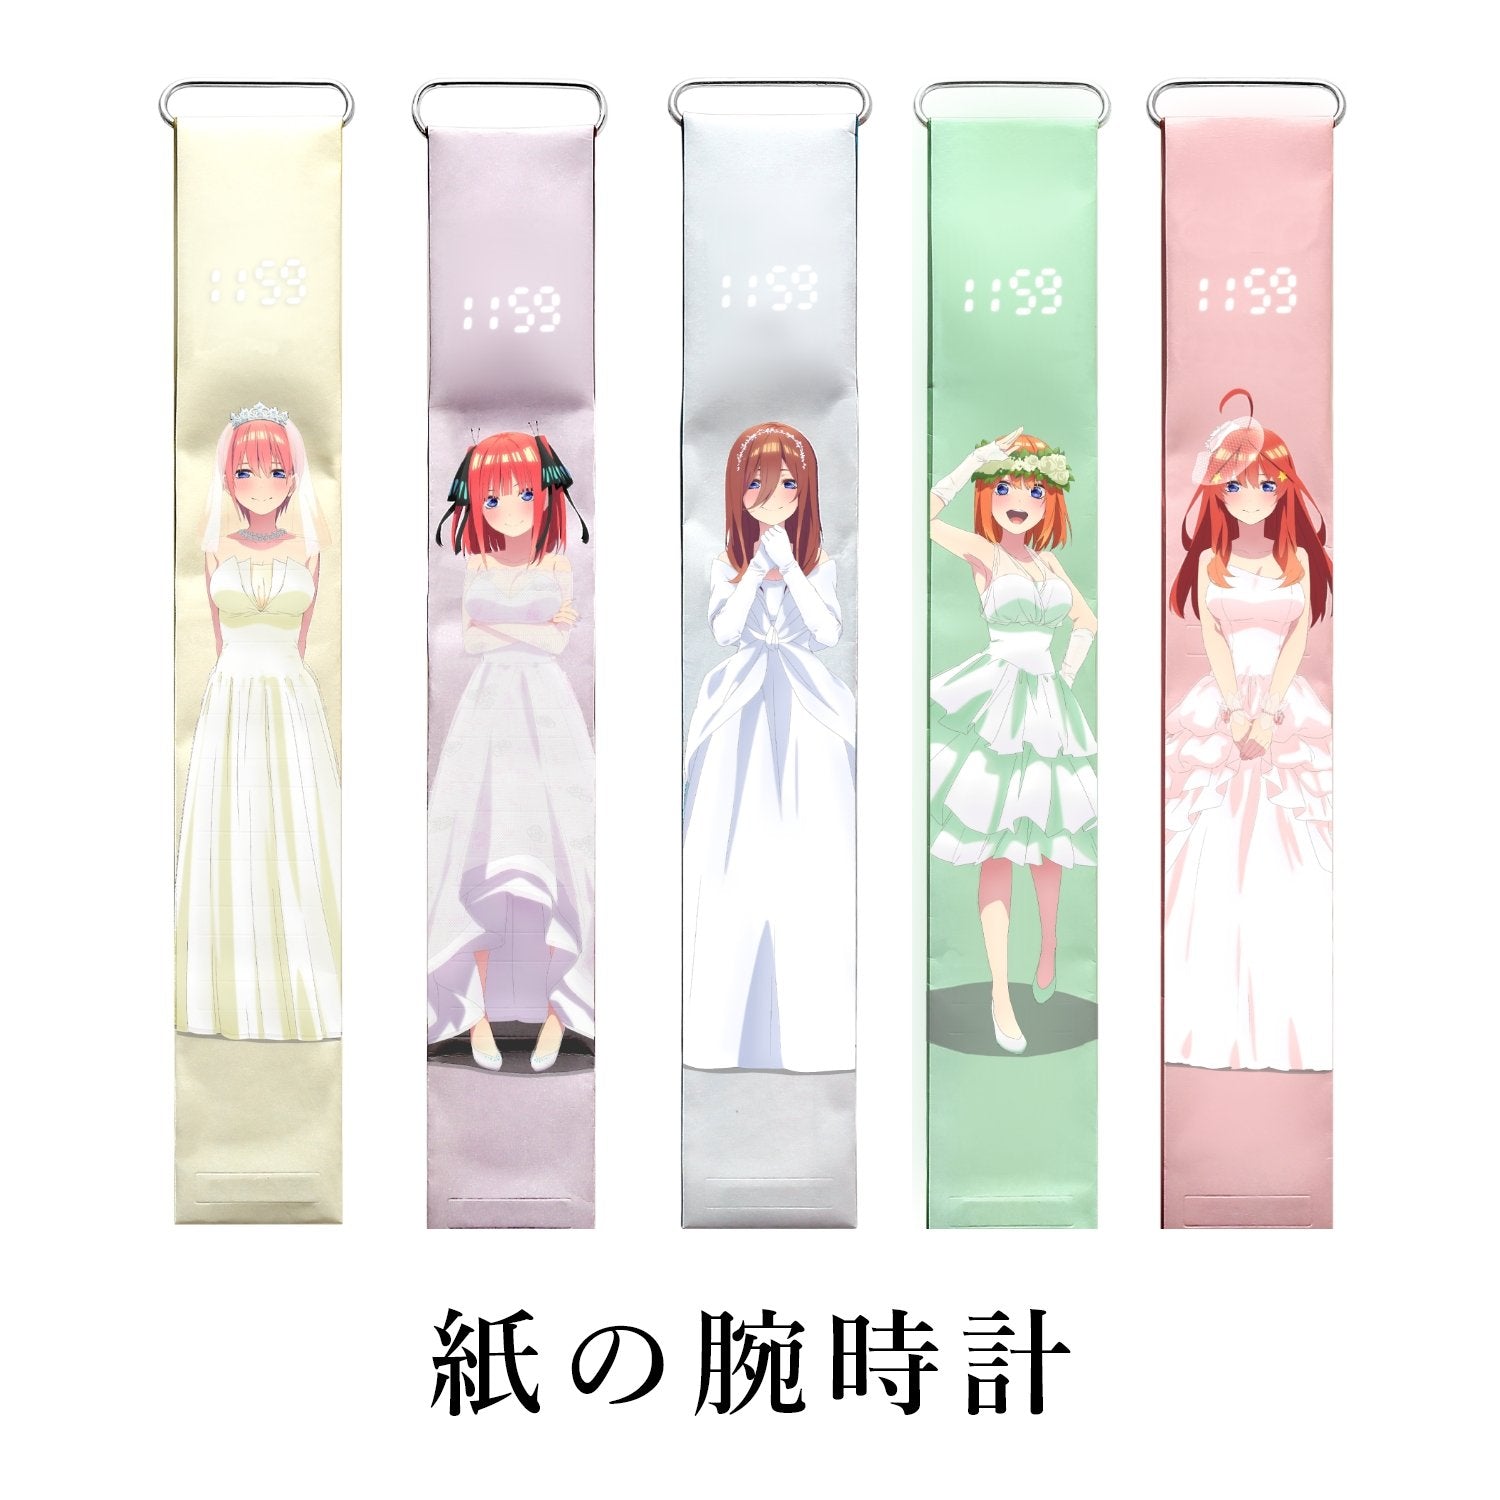 映画「五等分の花嫁」公式ペーパーウォッチ - 公式通販サイト「アニメコレクション/Anime Collection」